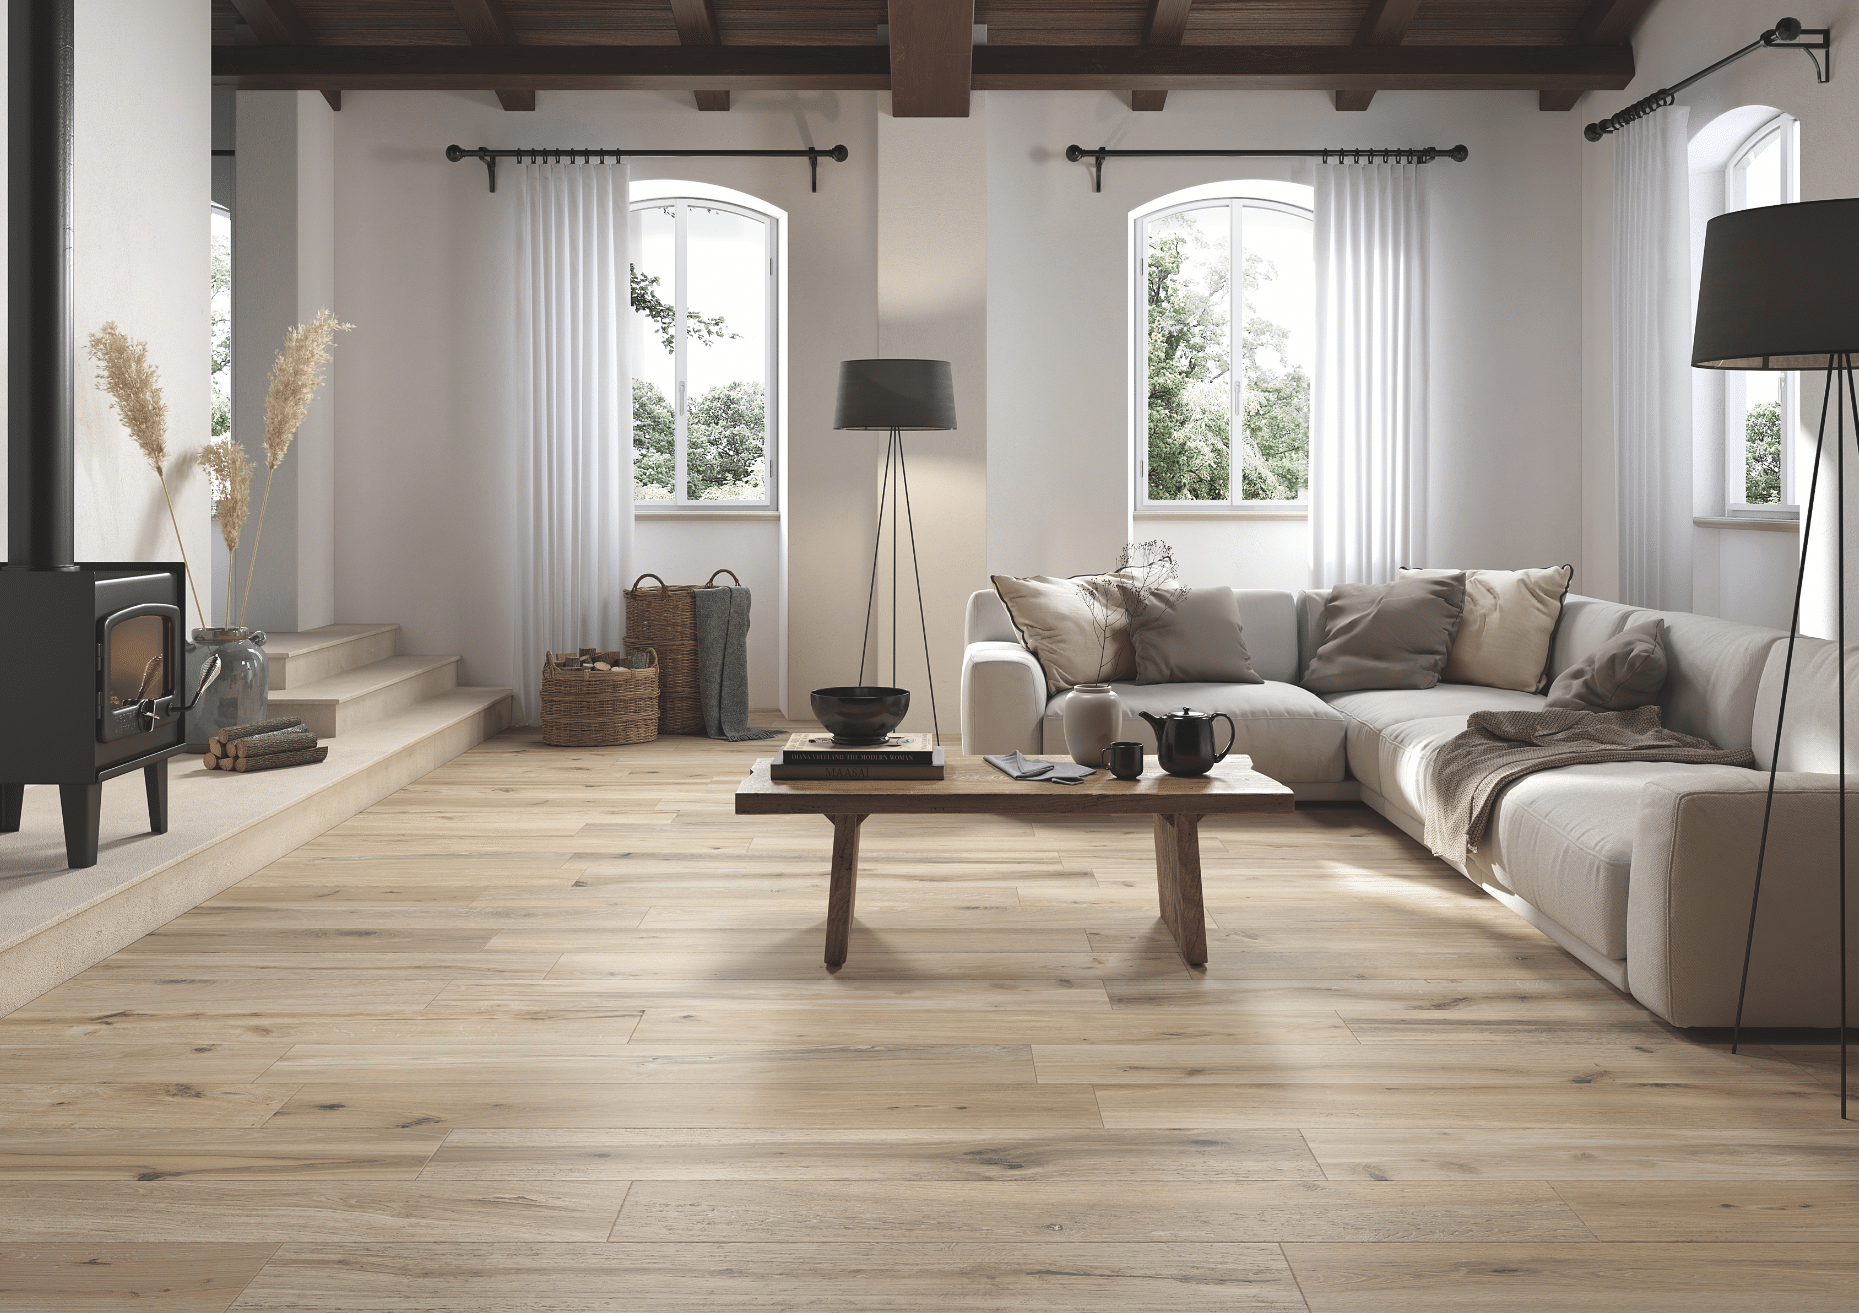 Fliesendorf zeigt ein Wohnzimmer in Naturtönen mit Holzboden und beiger Couchlandschaft mit einem schwarzen Kamin und gefliesten Treppen.